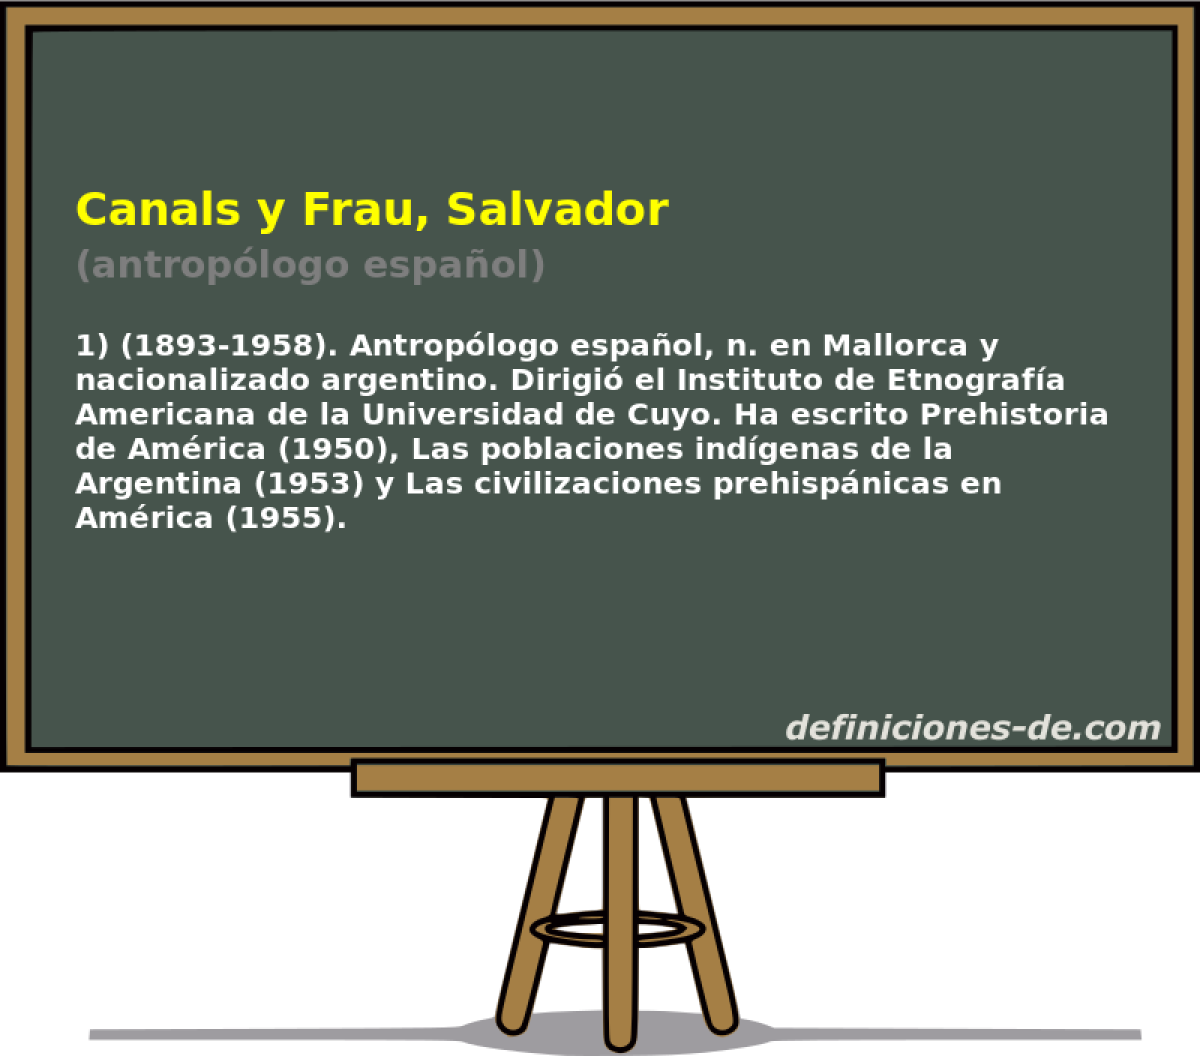 Canals y Frau, Salvador (antroplogo espaol)